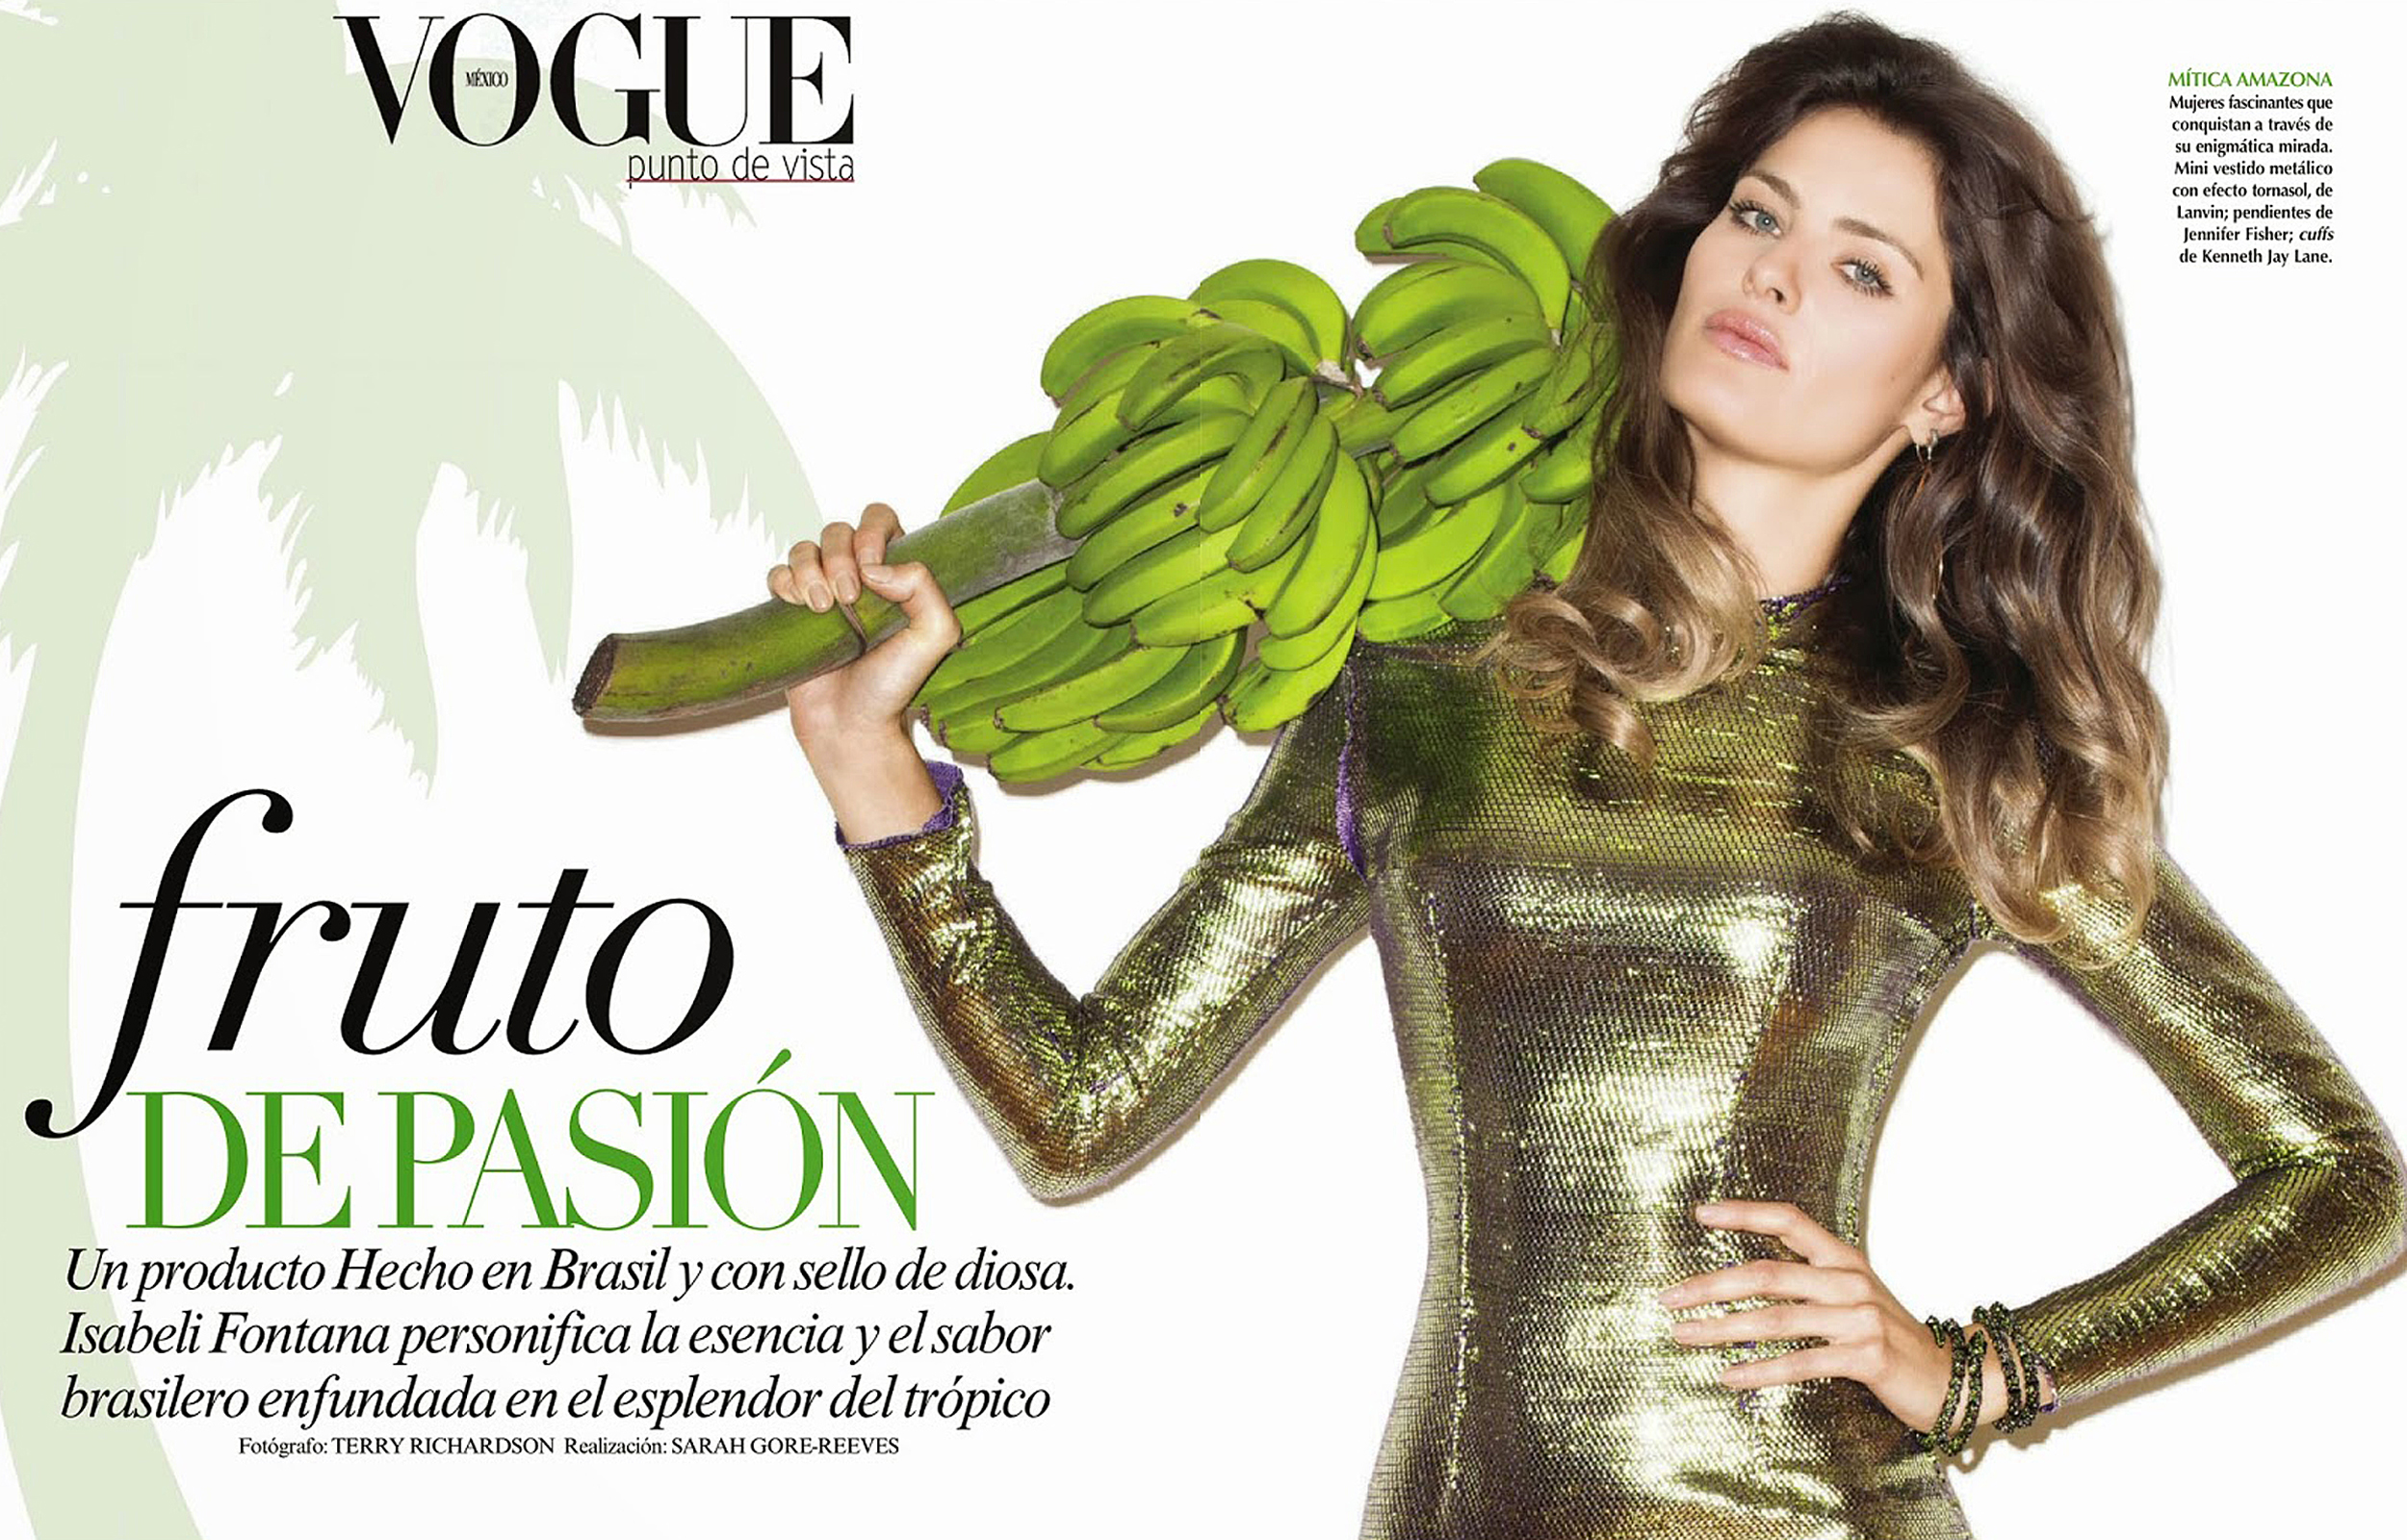 صور إيزابيلي فونتانا على مجلة فوج المكسيك يونيو 2014